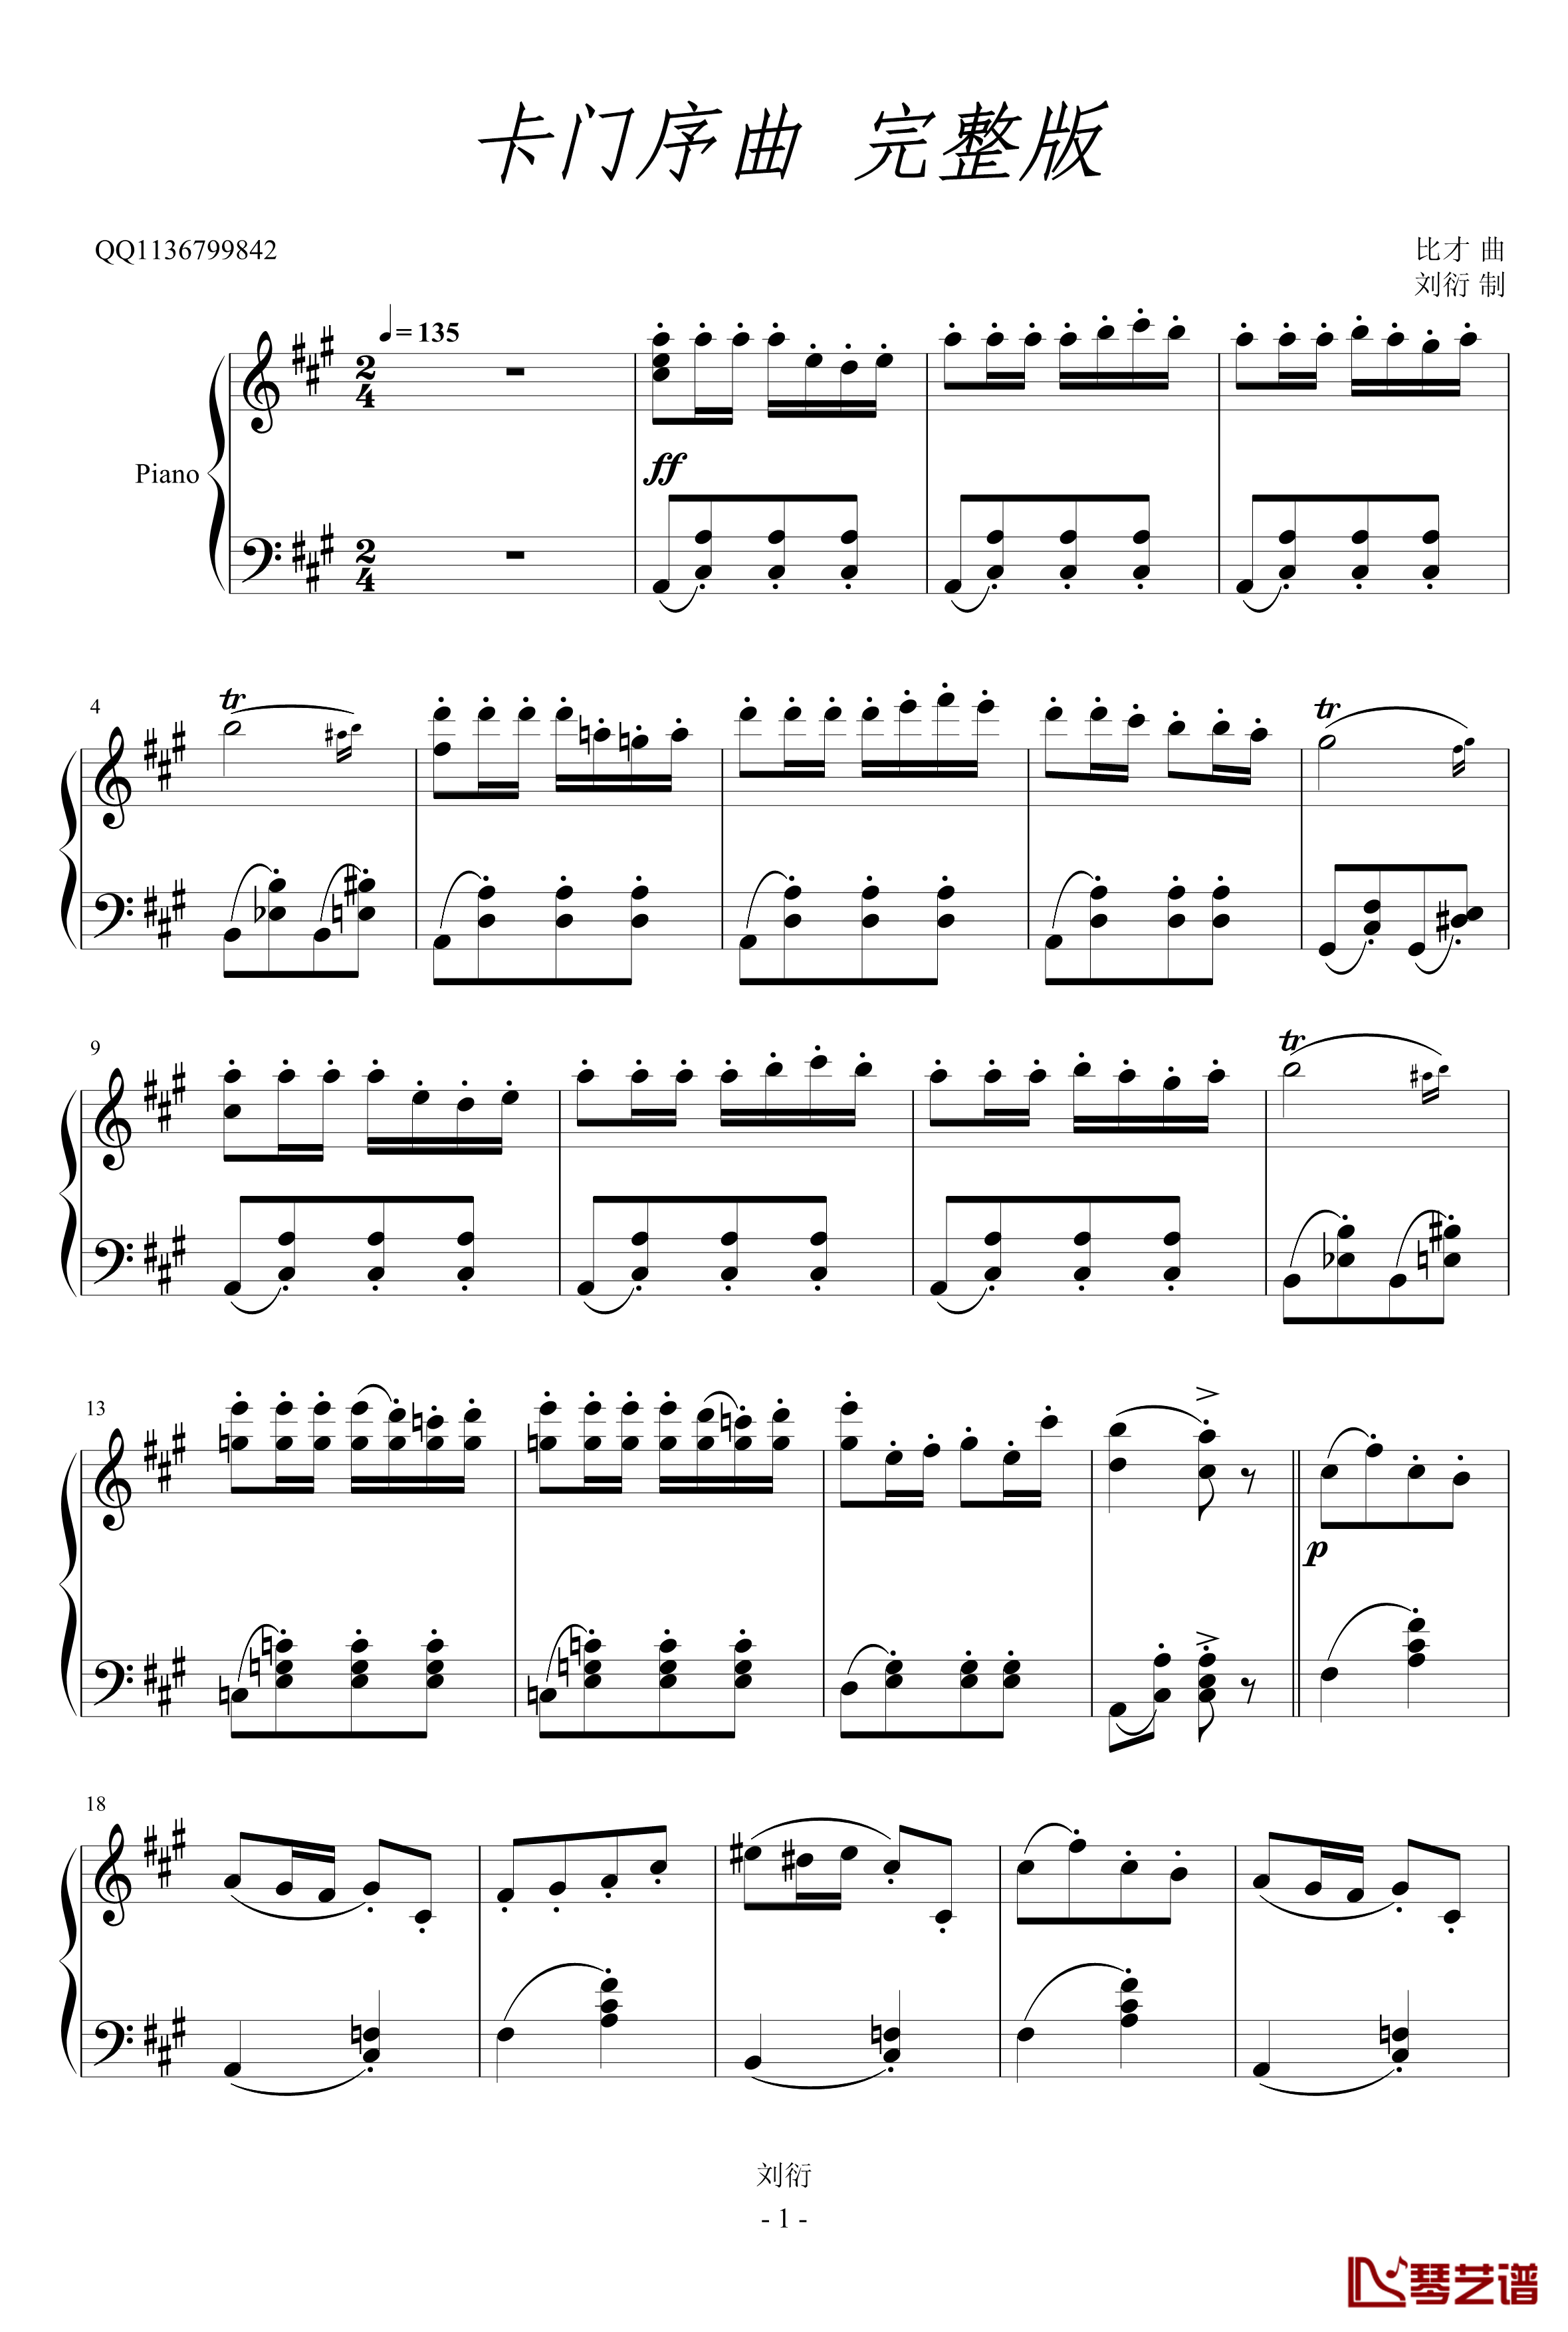 卡门序曲钢琴谱-完整版-比才-Bizet1